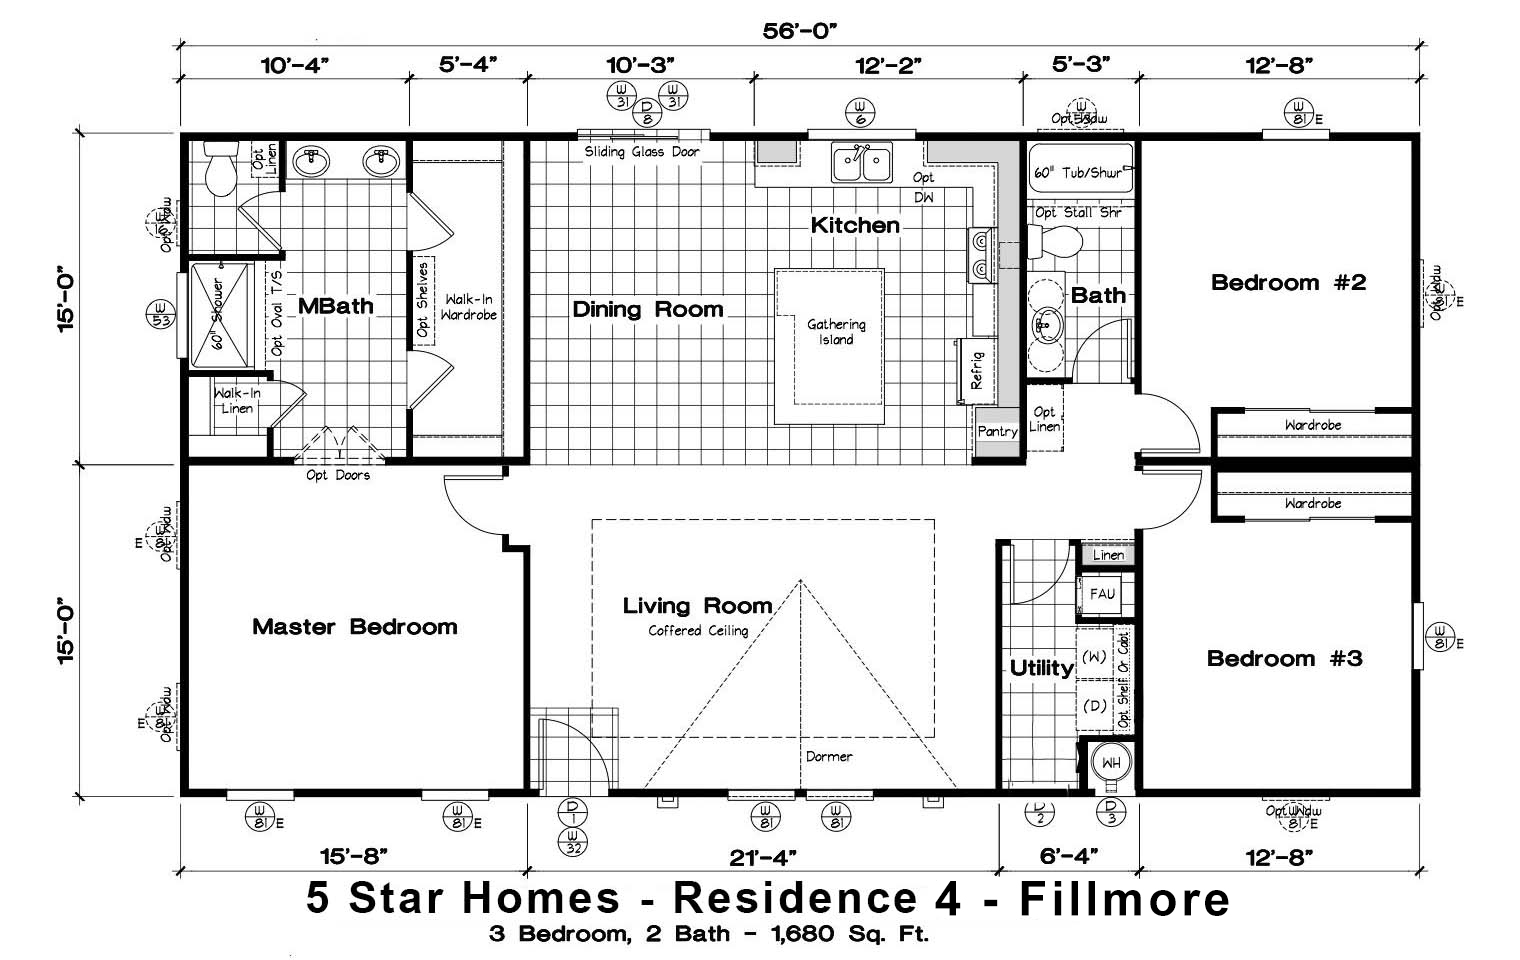 5 Star Homes - Residence 4 - Fillmore Floorplan